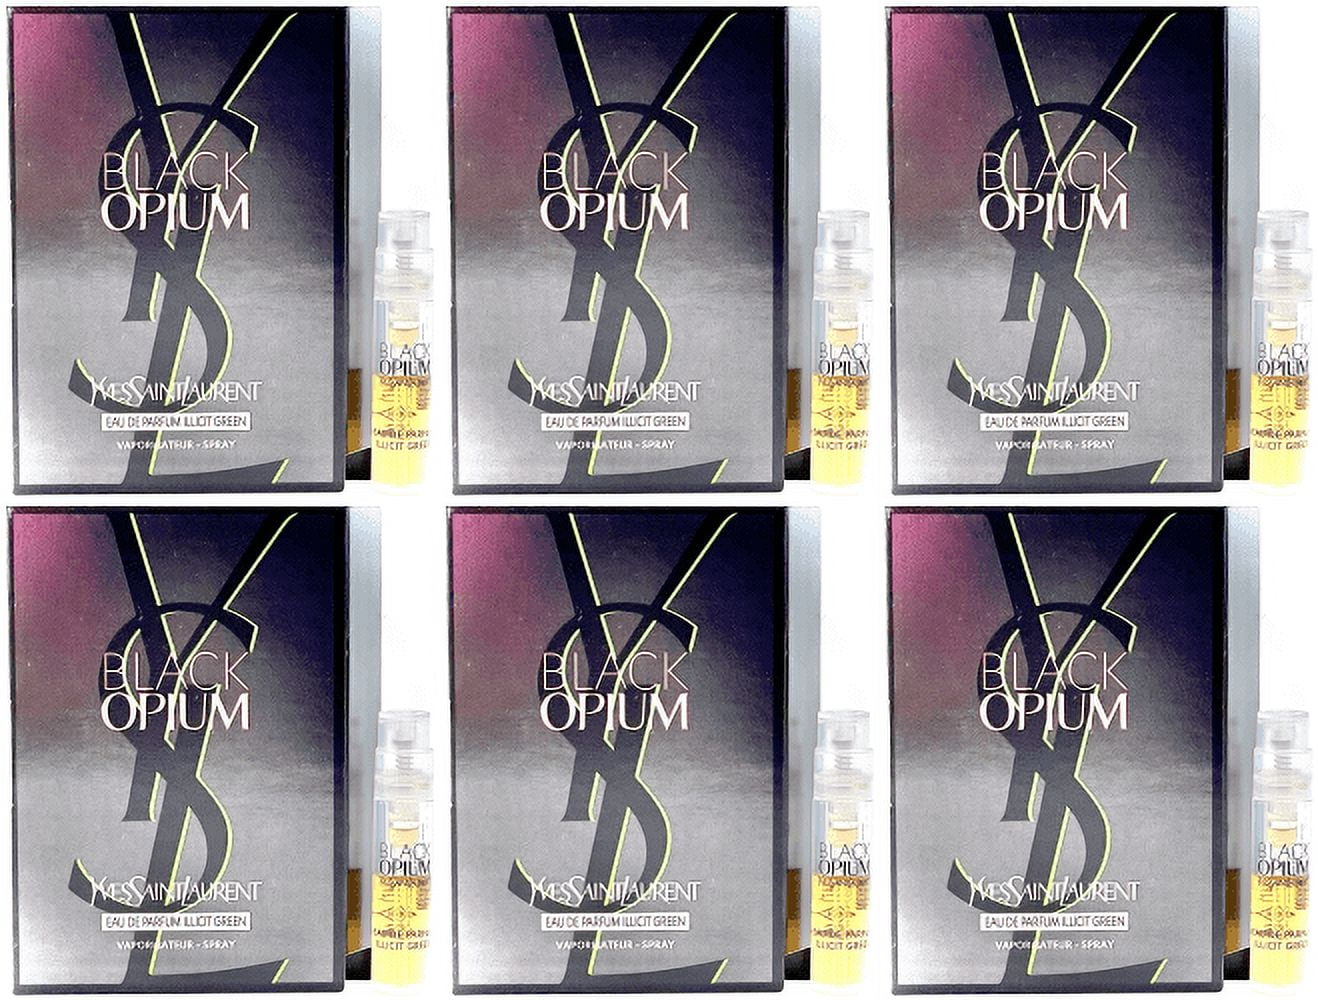 Black Opium Illicit Green Eau de Parfum Spray by Yves Saint Laurent - 1 oz